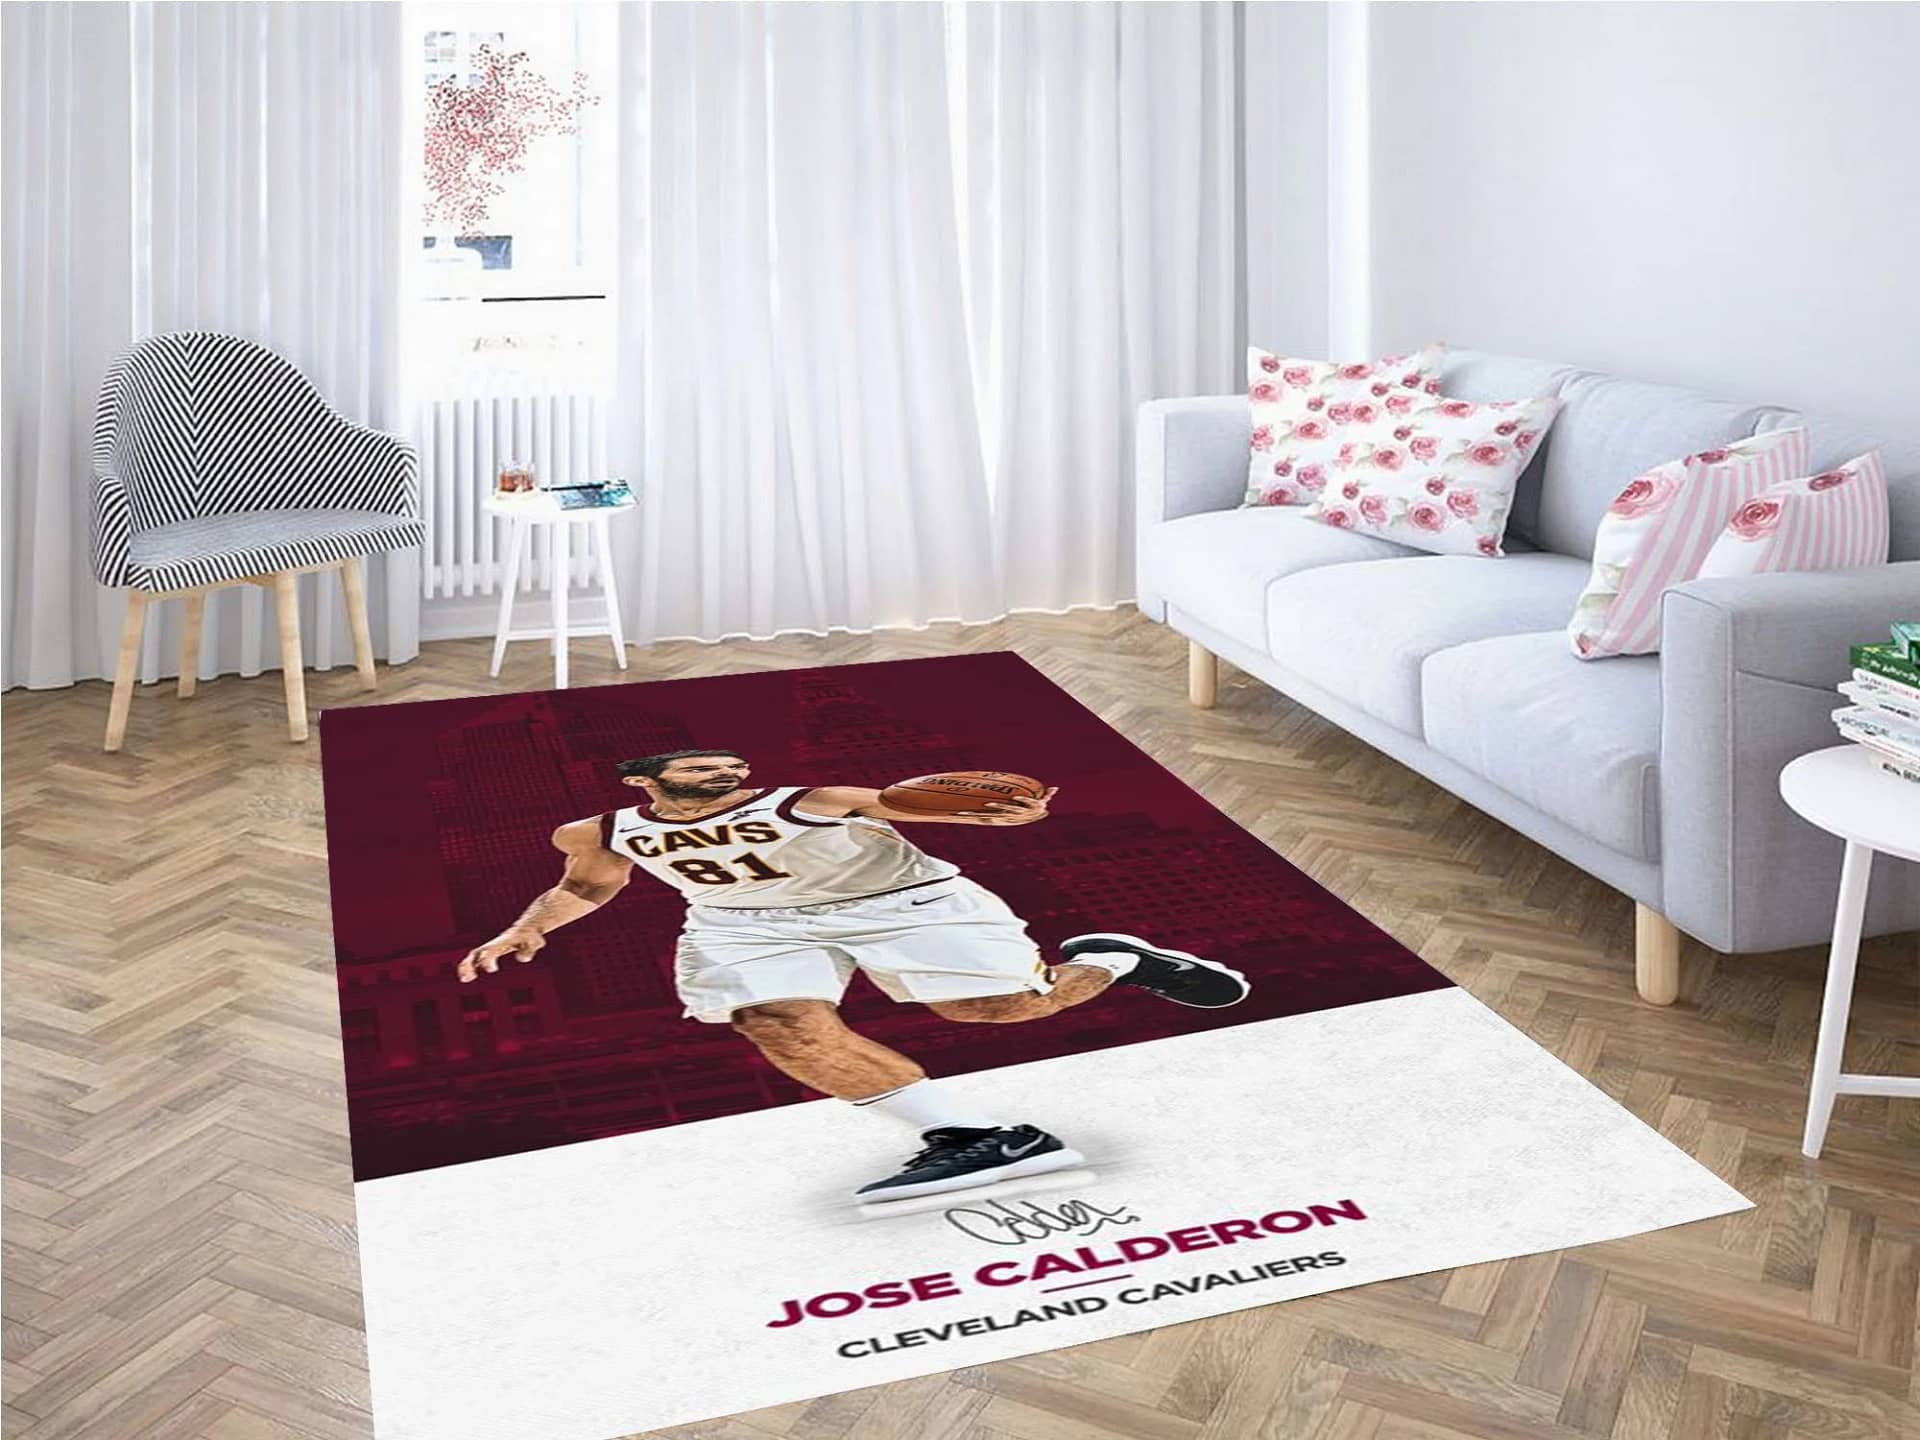 Jose Calderon Wallpaper Carpet Rug